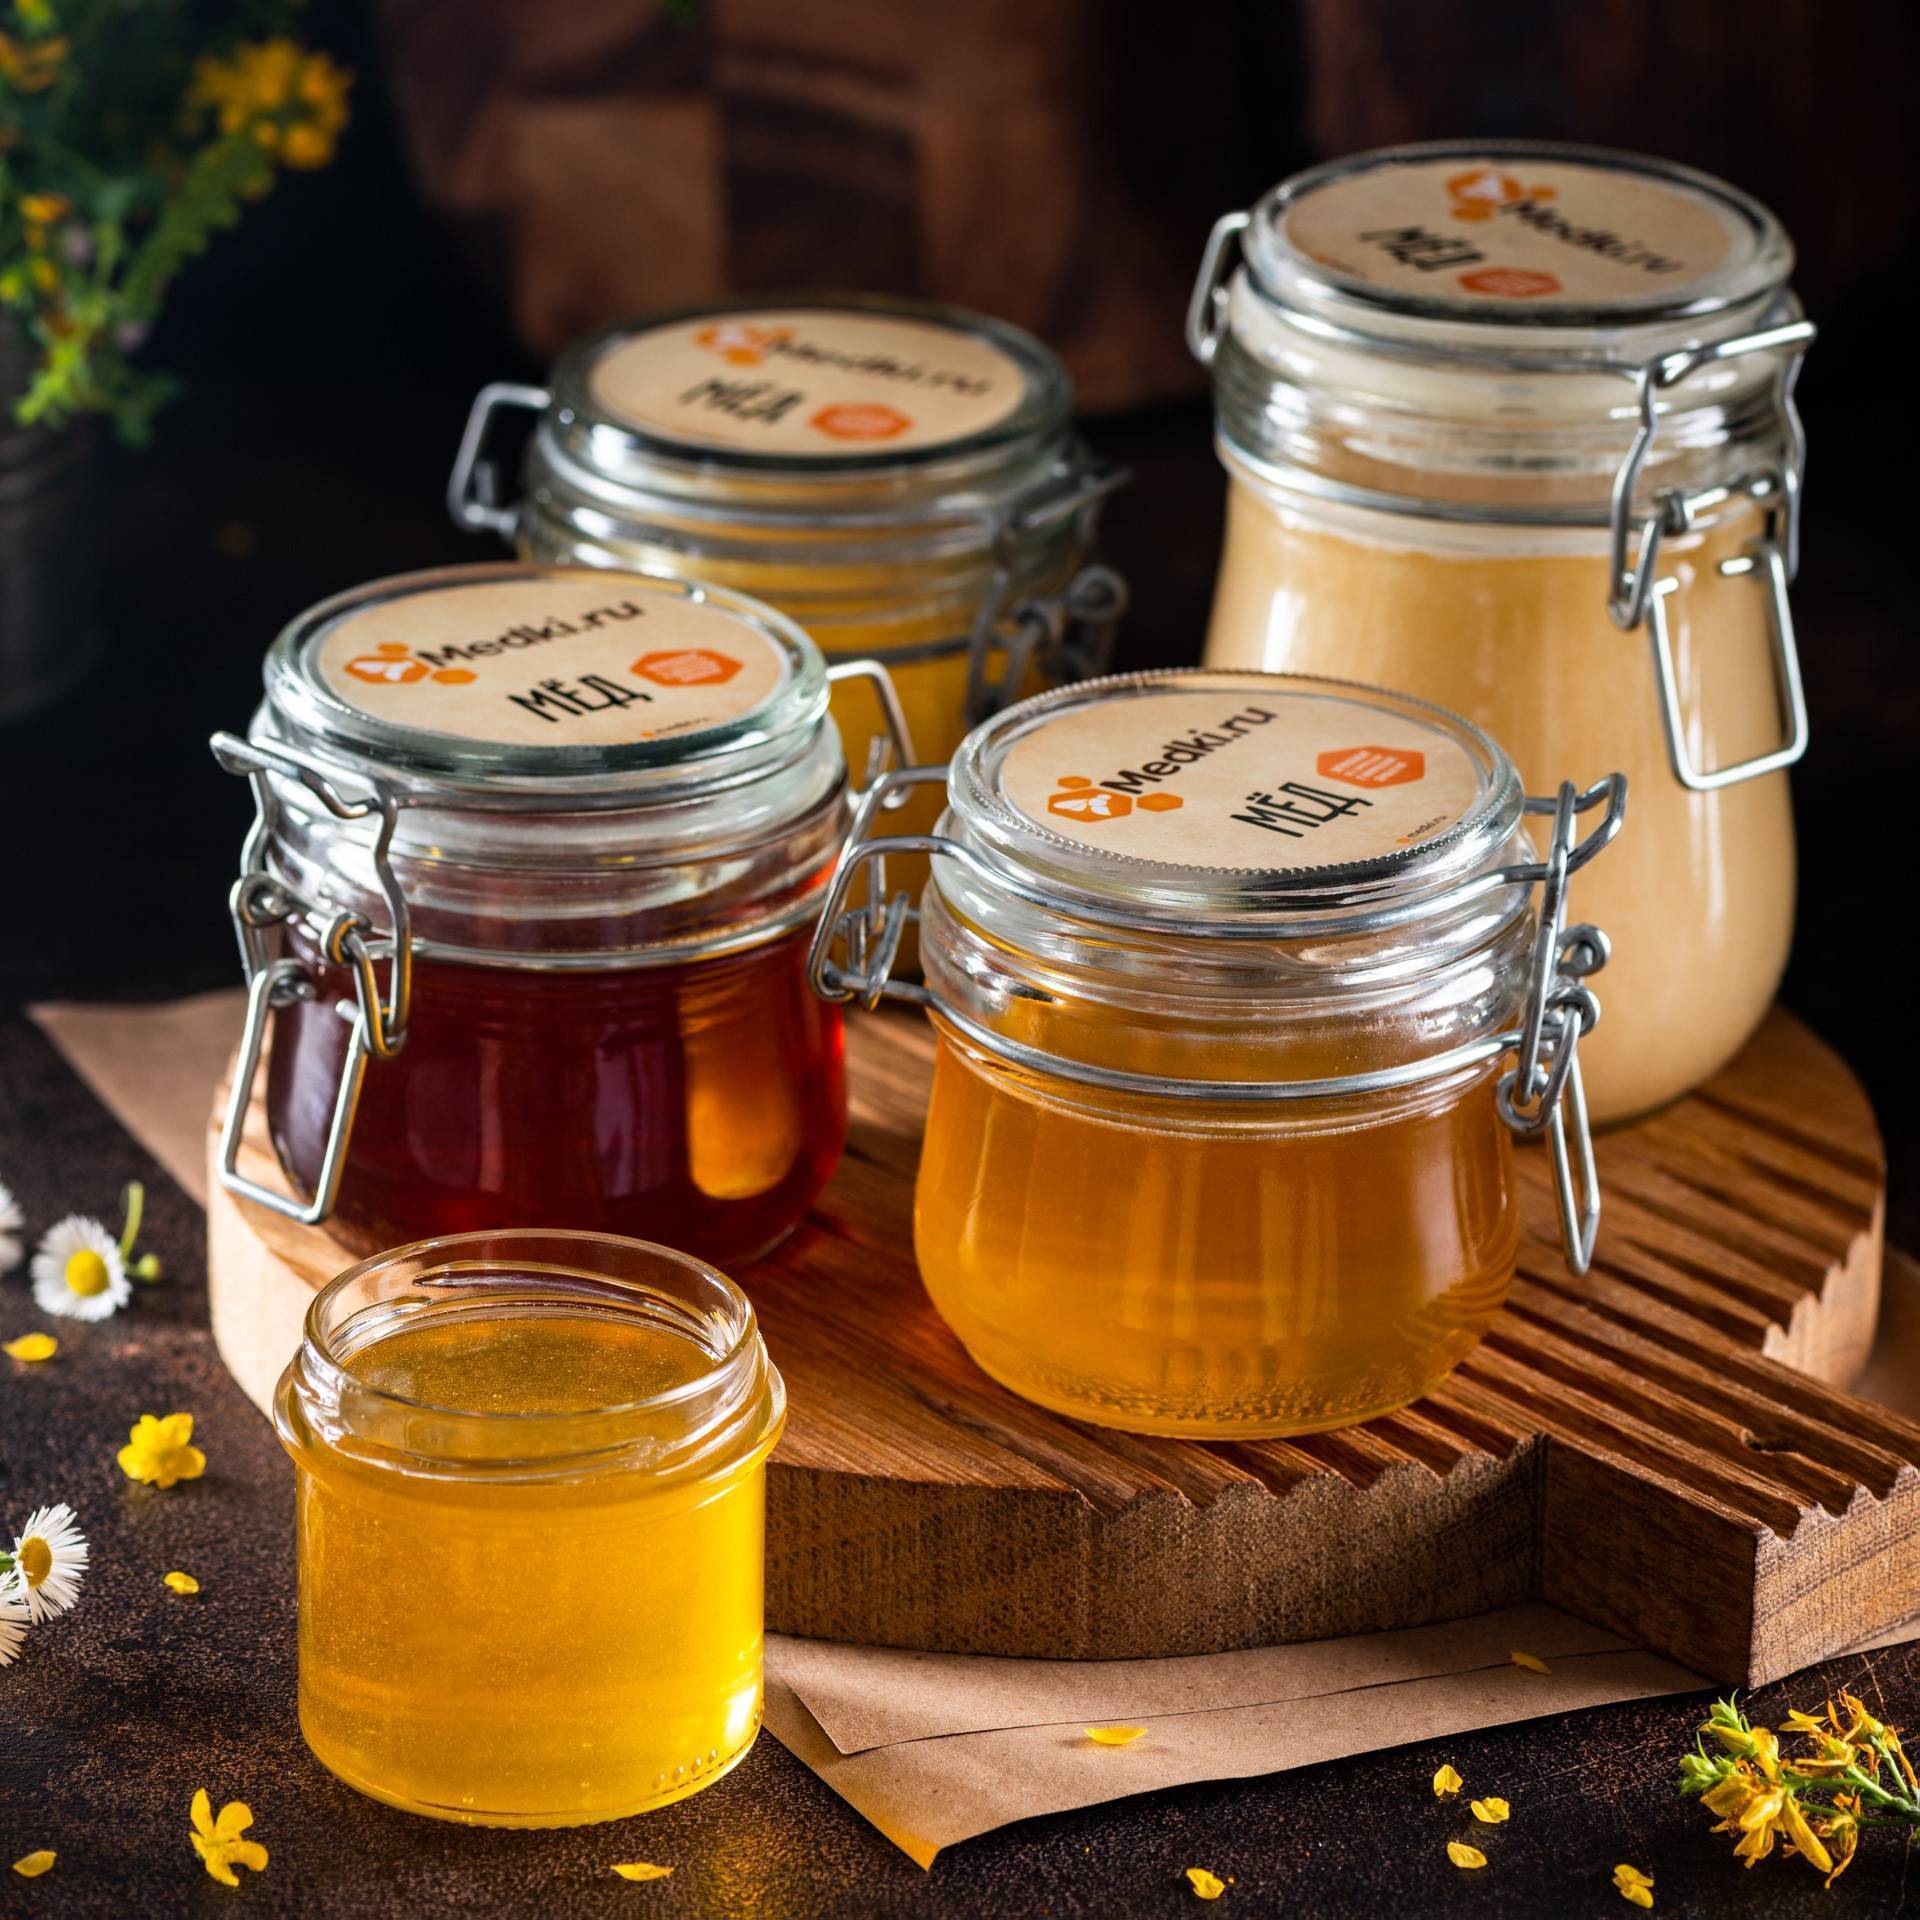 Как хранить мед: сколько можно, в чем и где, оптимальные условия, способы для разных сортов продукта